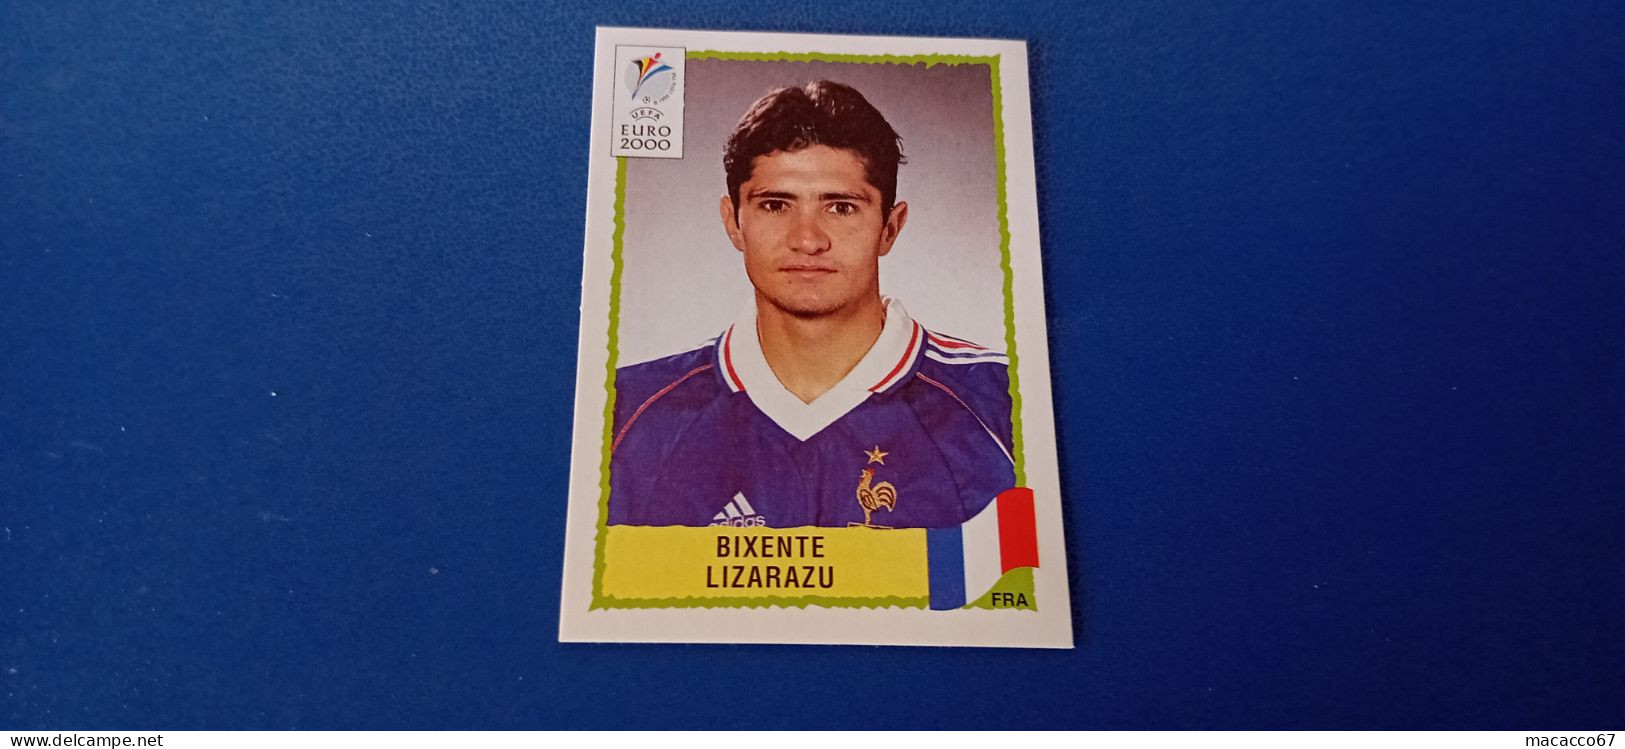 Figurina Panini Euro 2000 - 343 Lizarazu Francia - Italian Edition